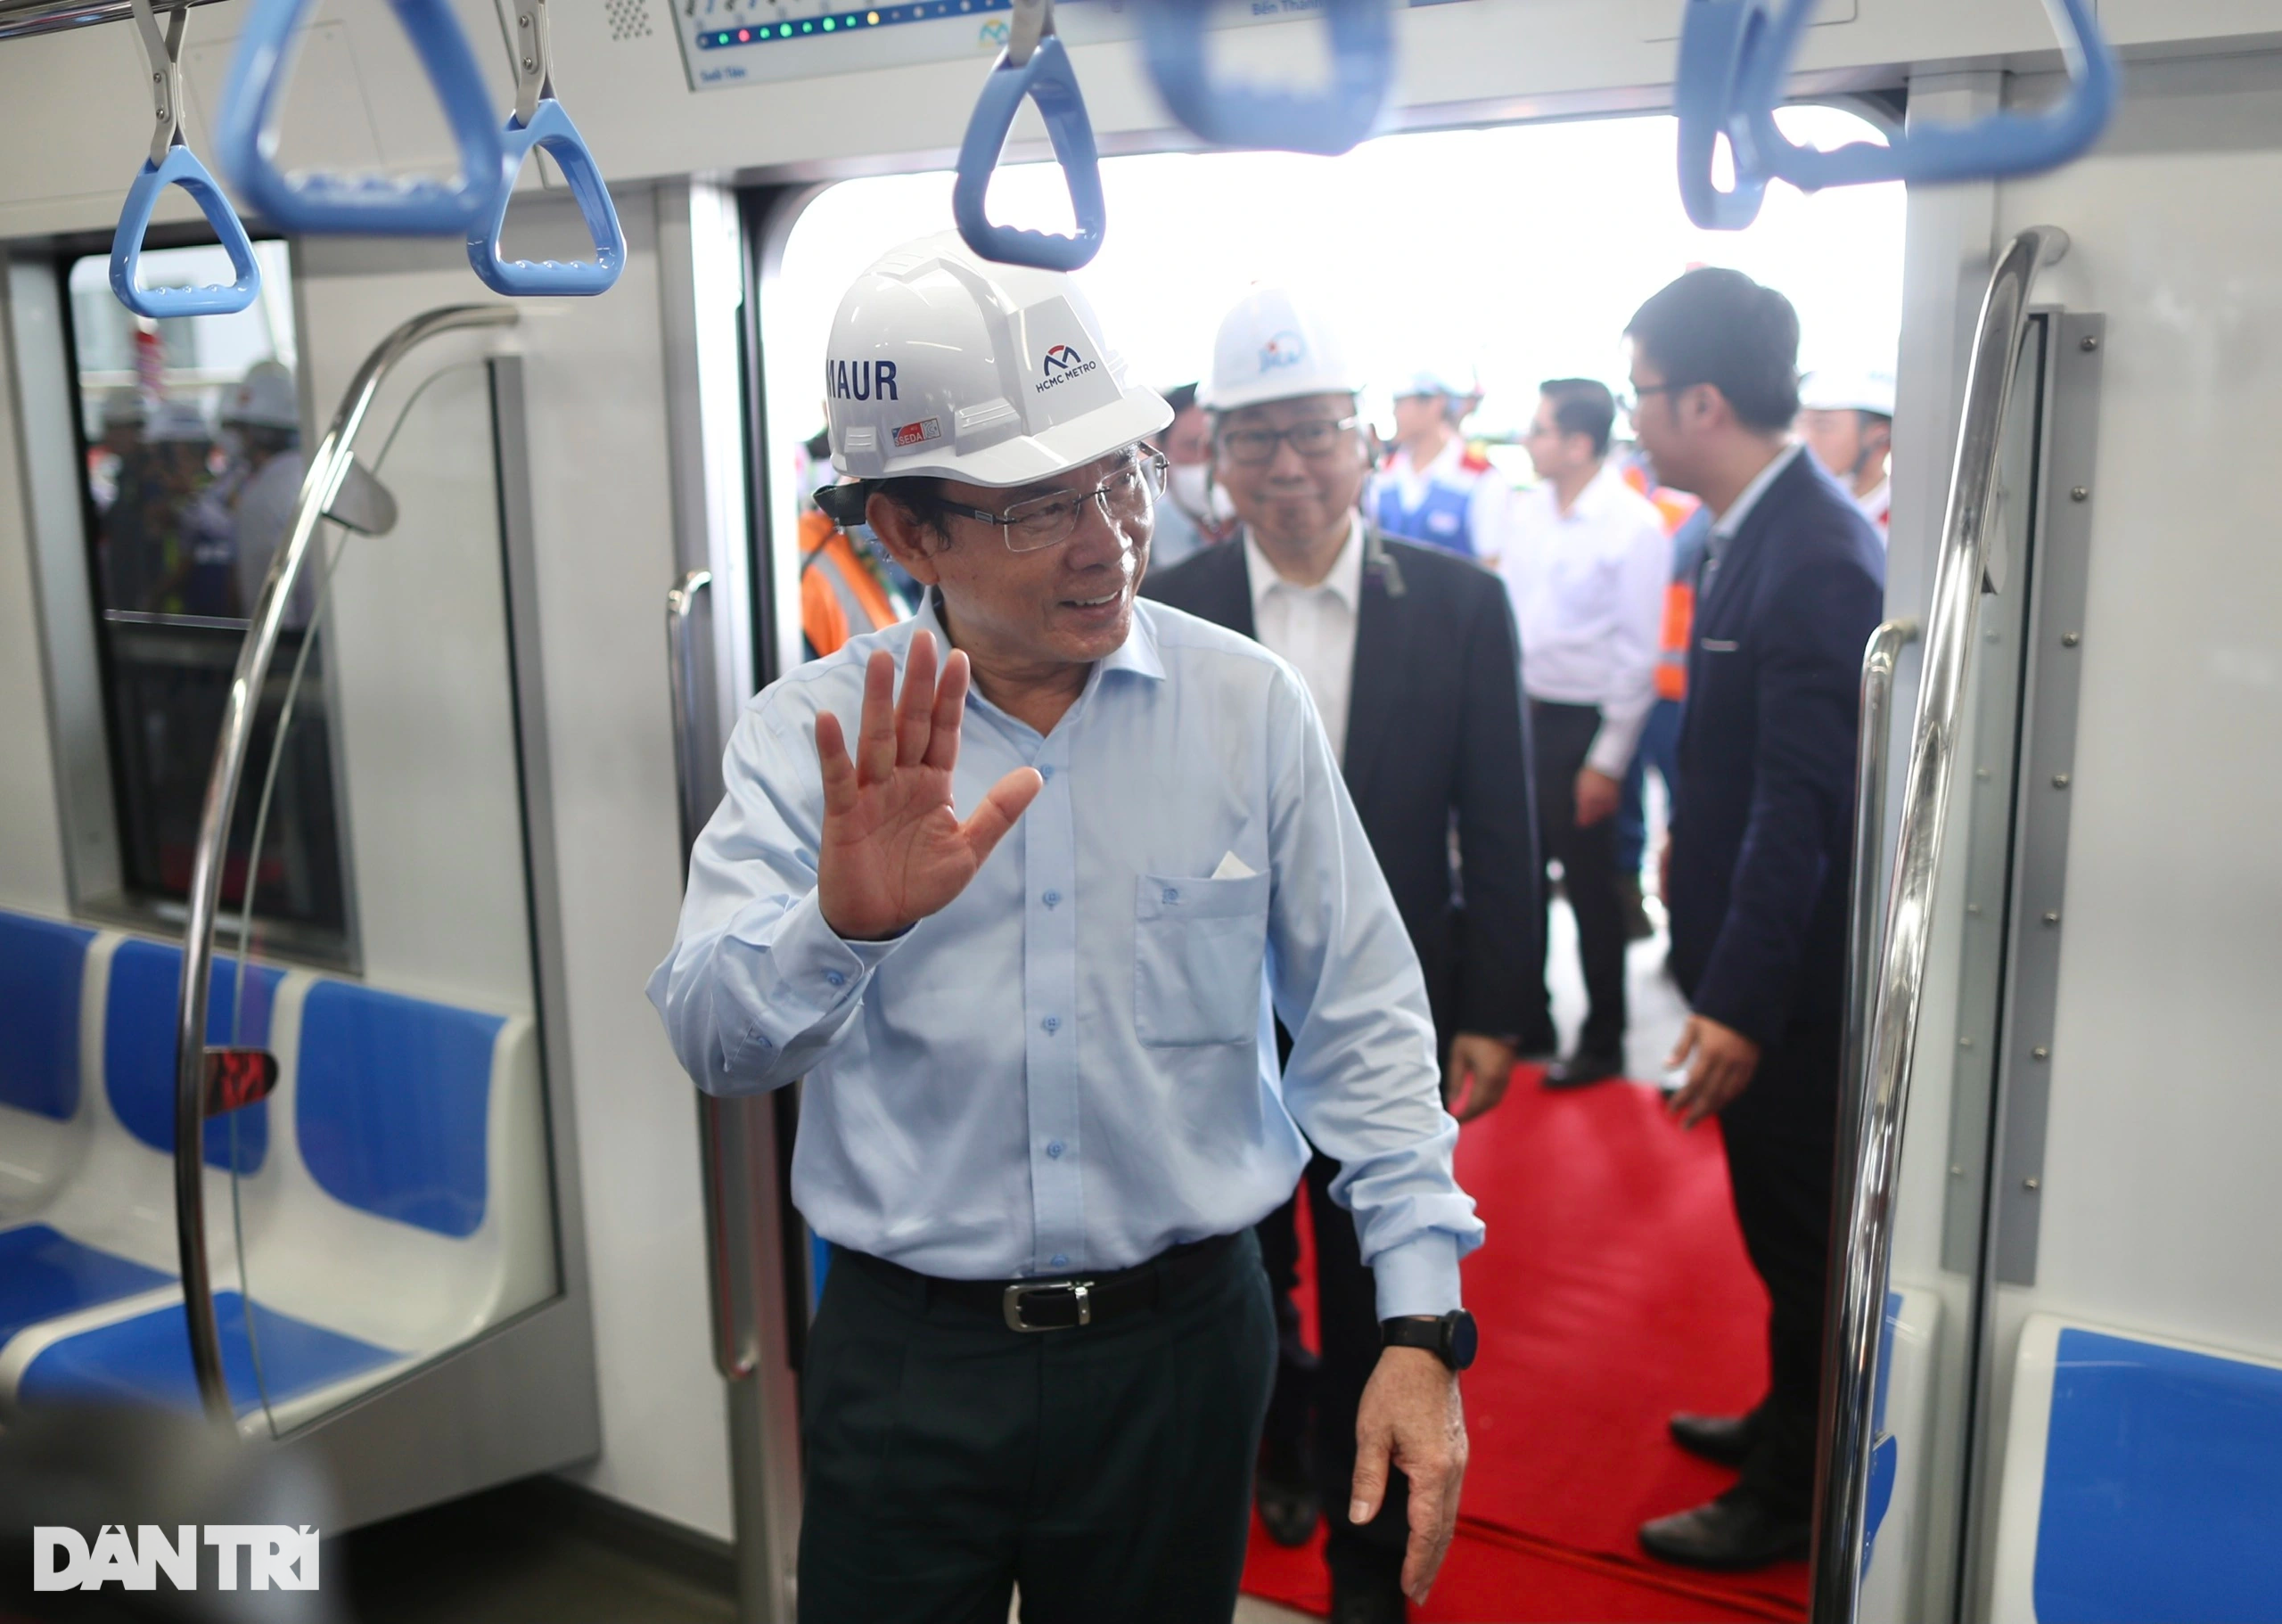 Người dân TPHCM hào hứng thử nghiệm tàu metro số 1 Bến Thành - Suối Tiên - 2